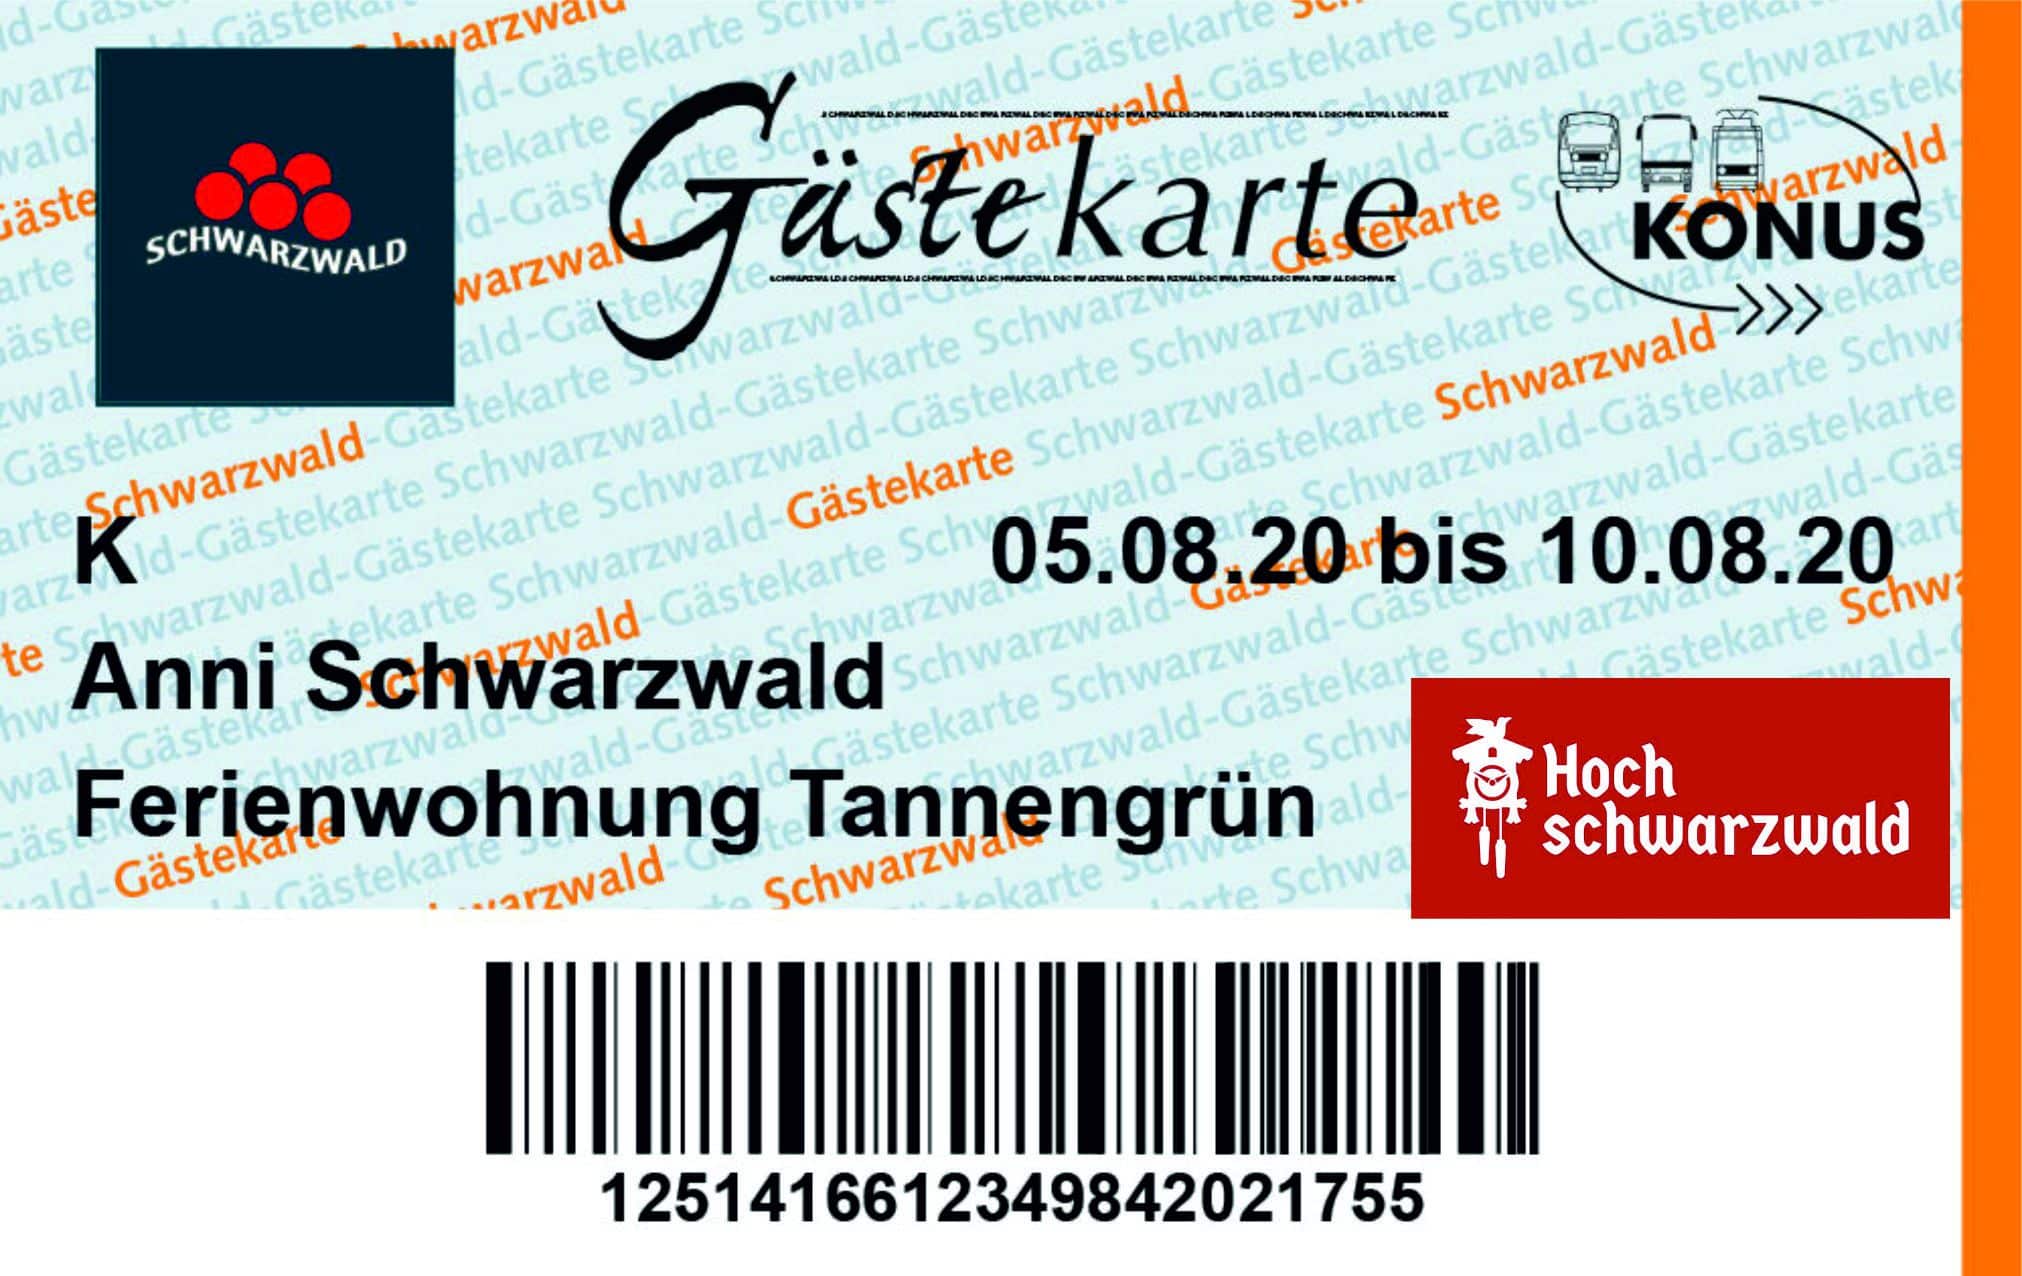 schwarzwald tourist information